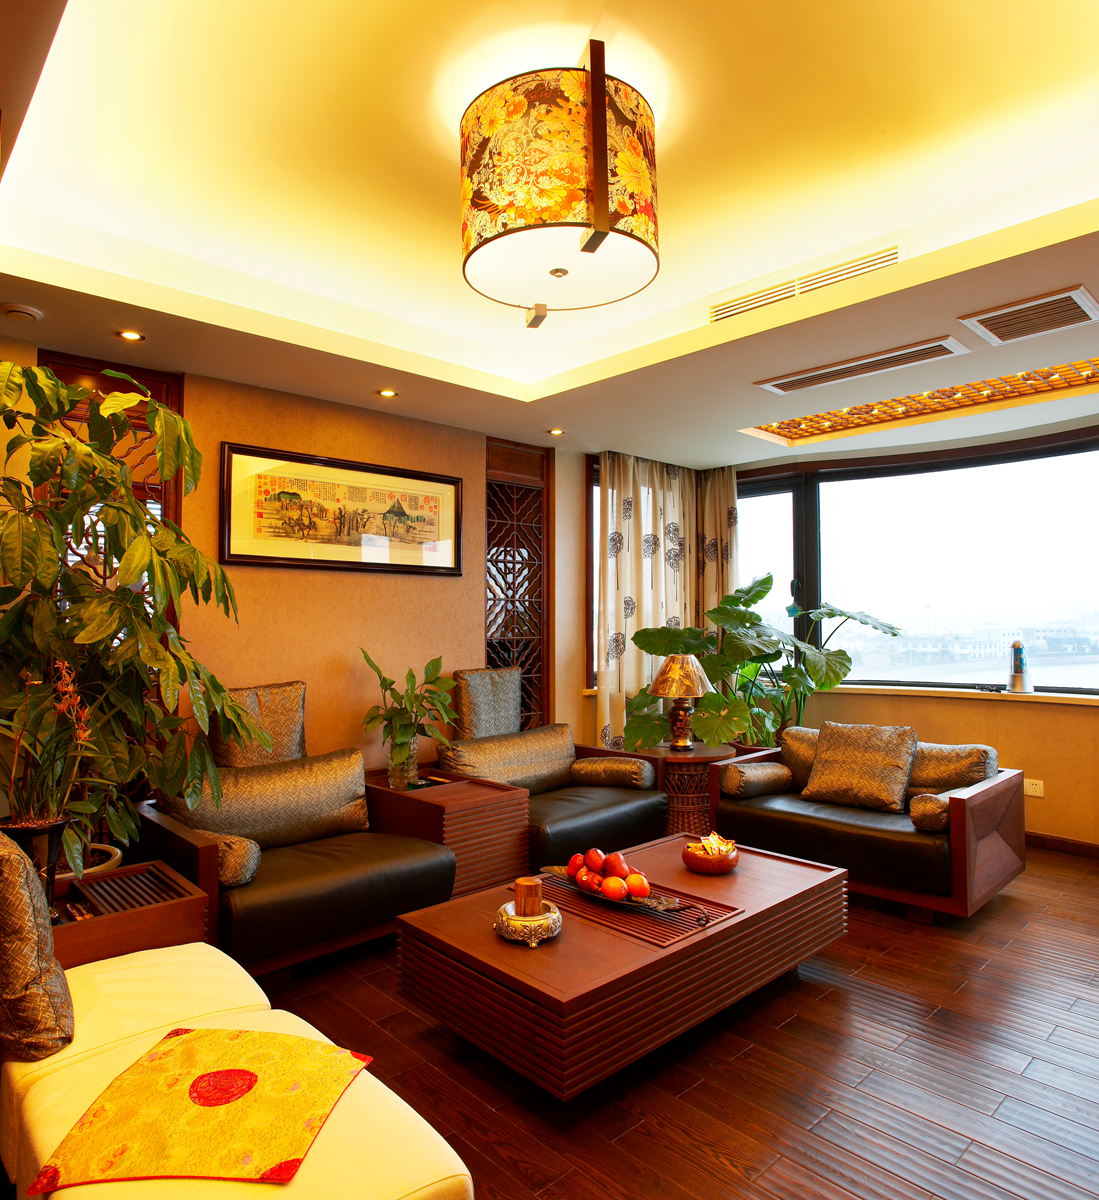 宁波碧水华庭公寓复式红木中式客厅吊顶灯具设计